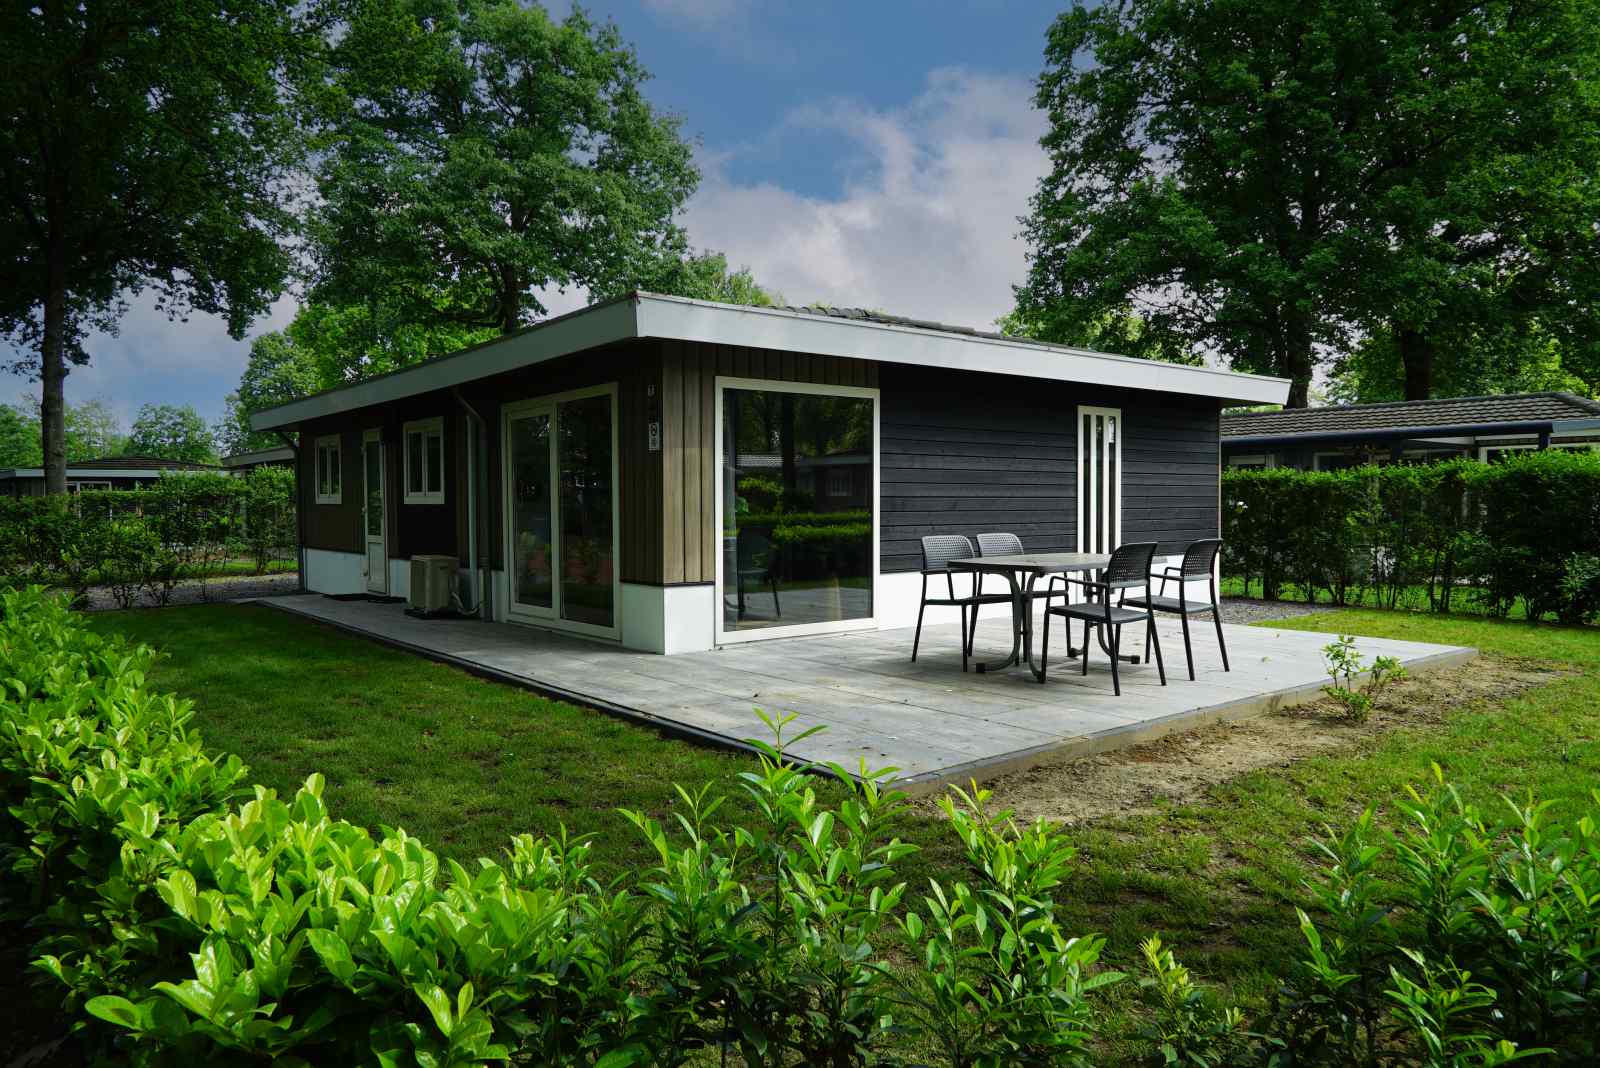 Luxe 6 persoons vakantiehuis op vakantiepark Limburg in Susteren